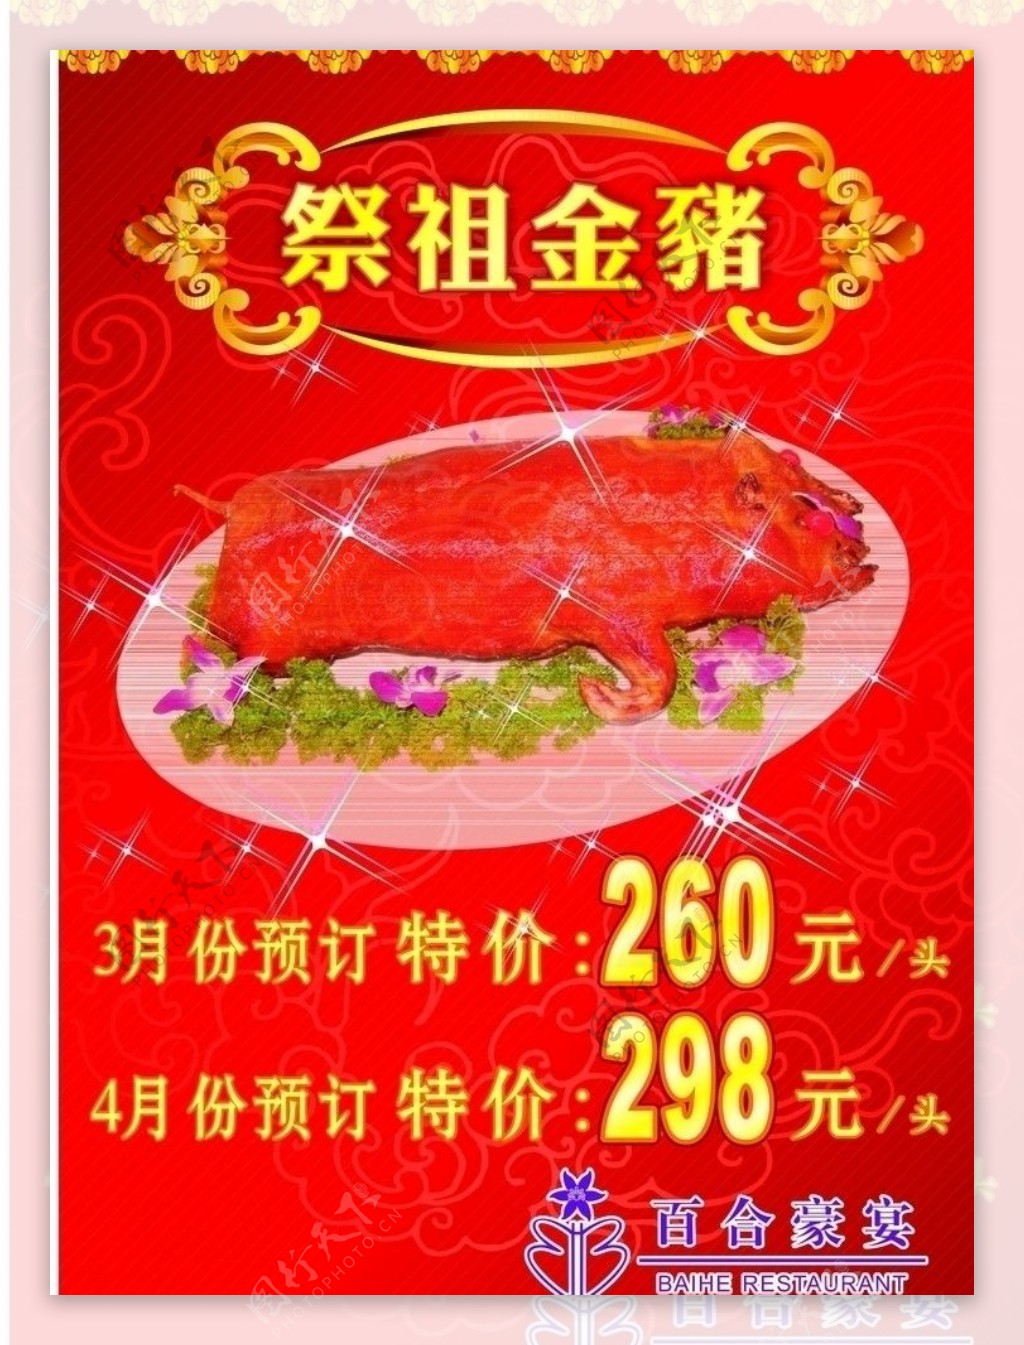 清明节祭祖金猪图片